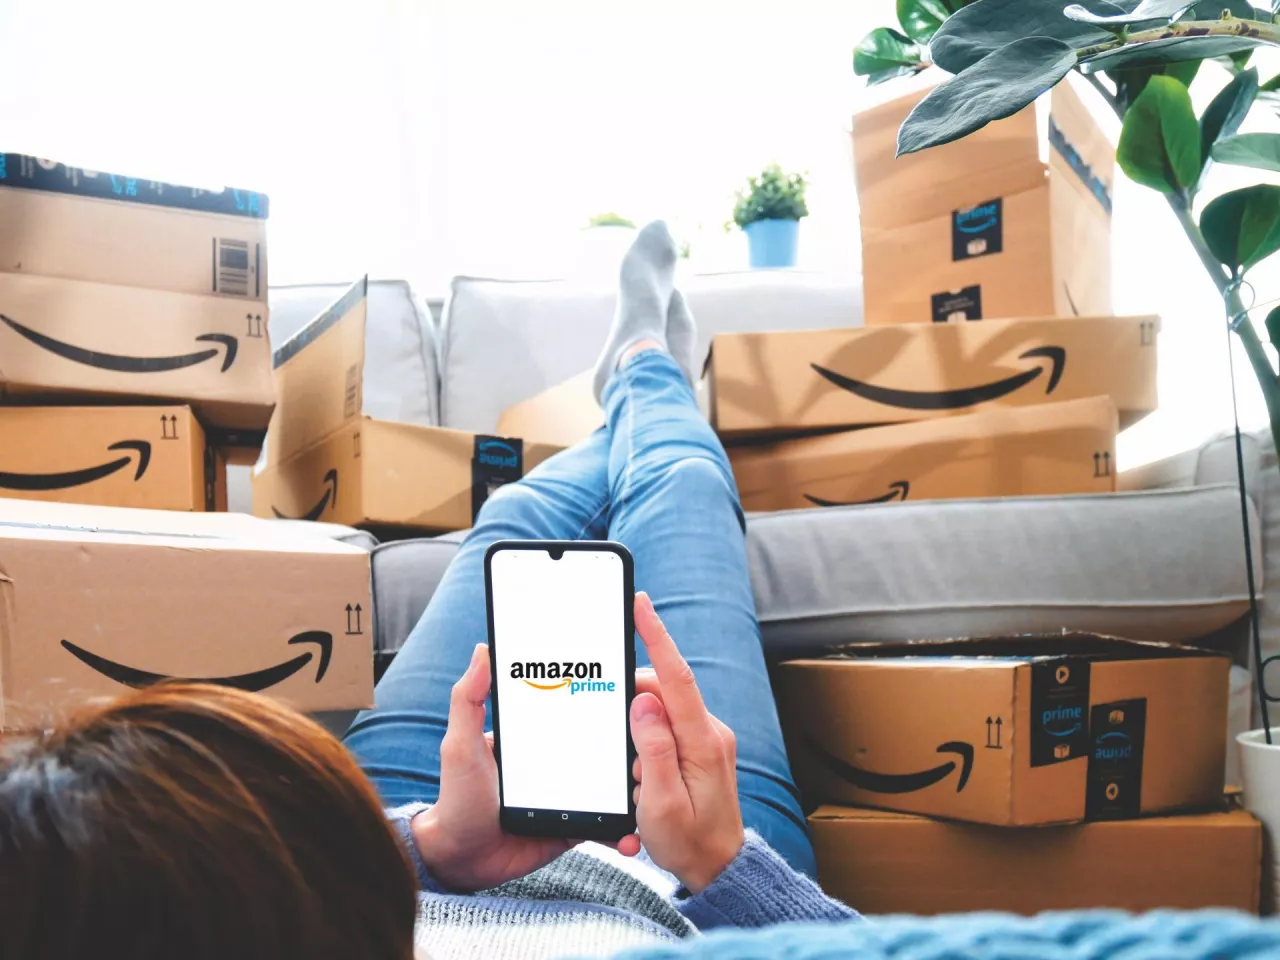 Czyżby Amazon miał asa w rękawie? (fot. Elpisterra/Shutterstock)